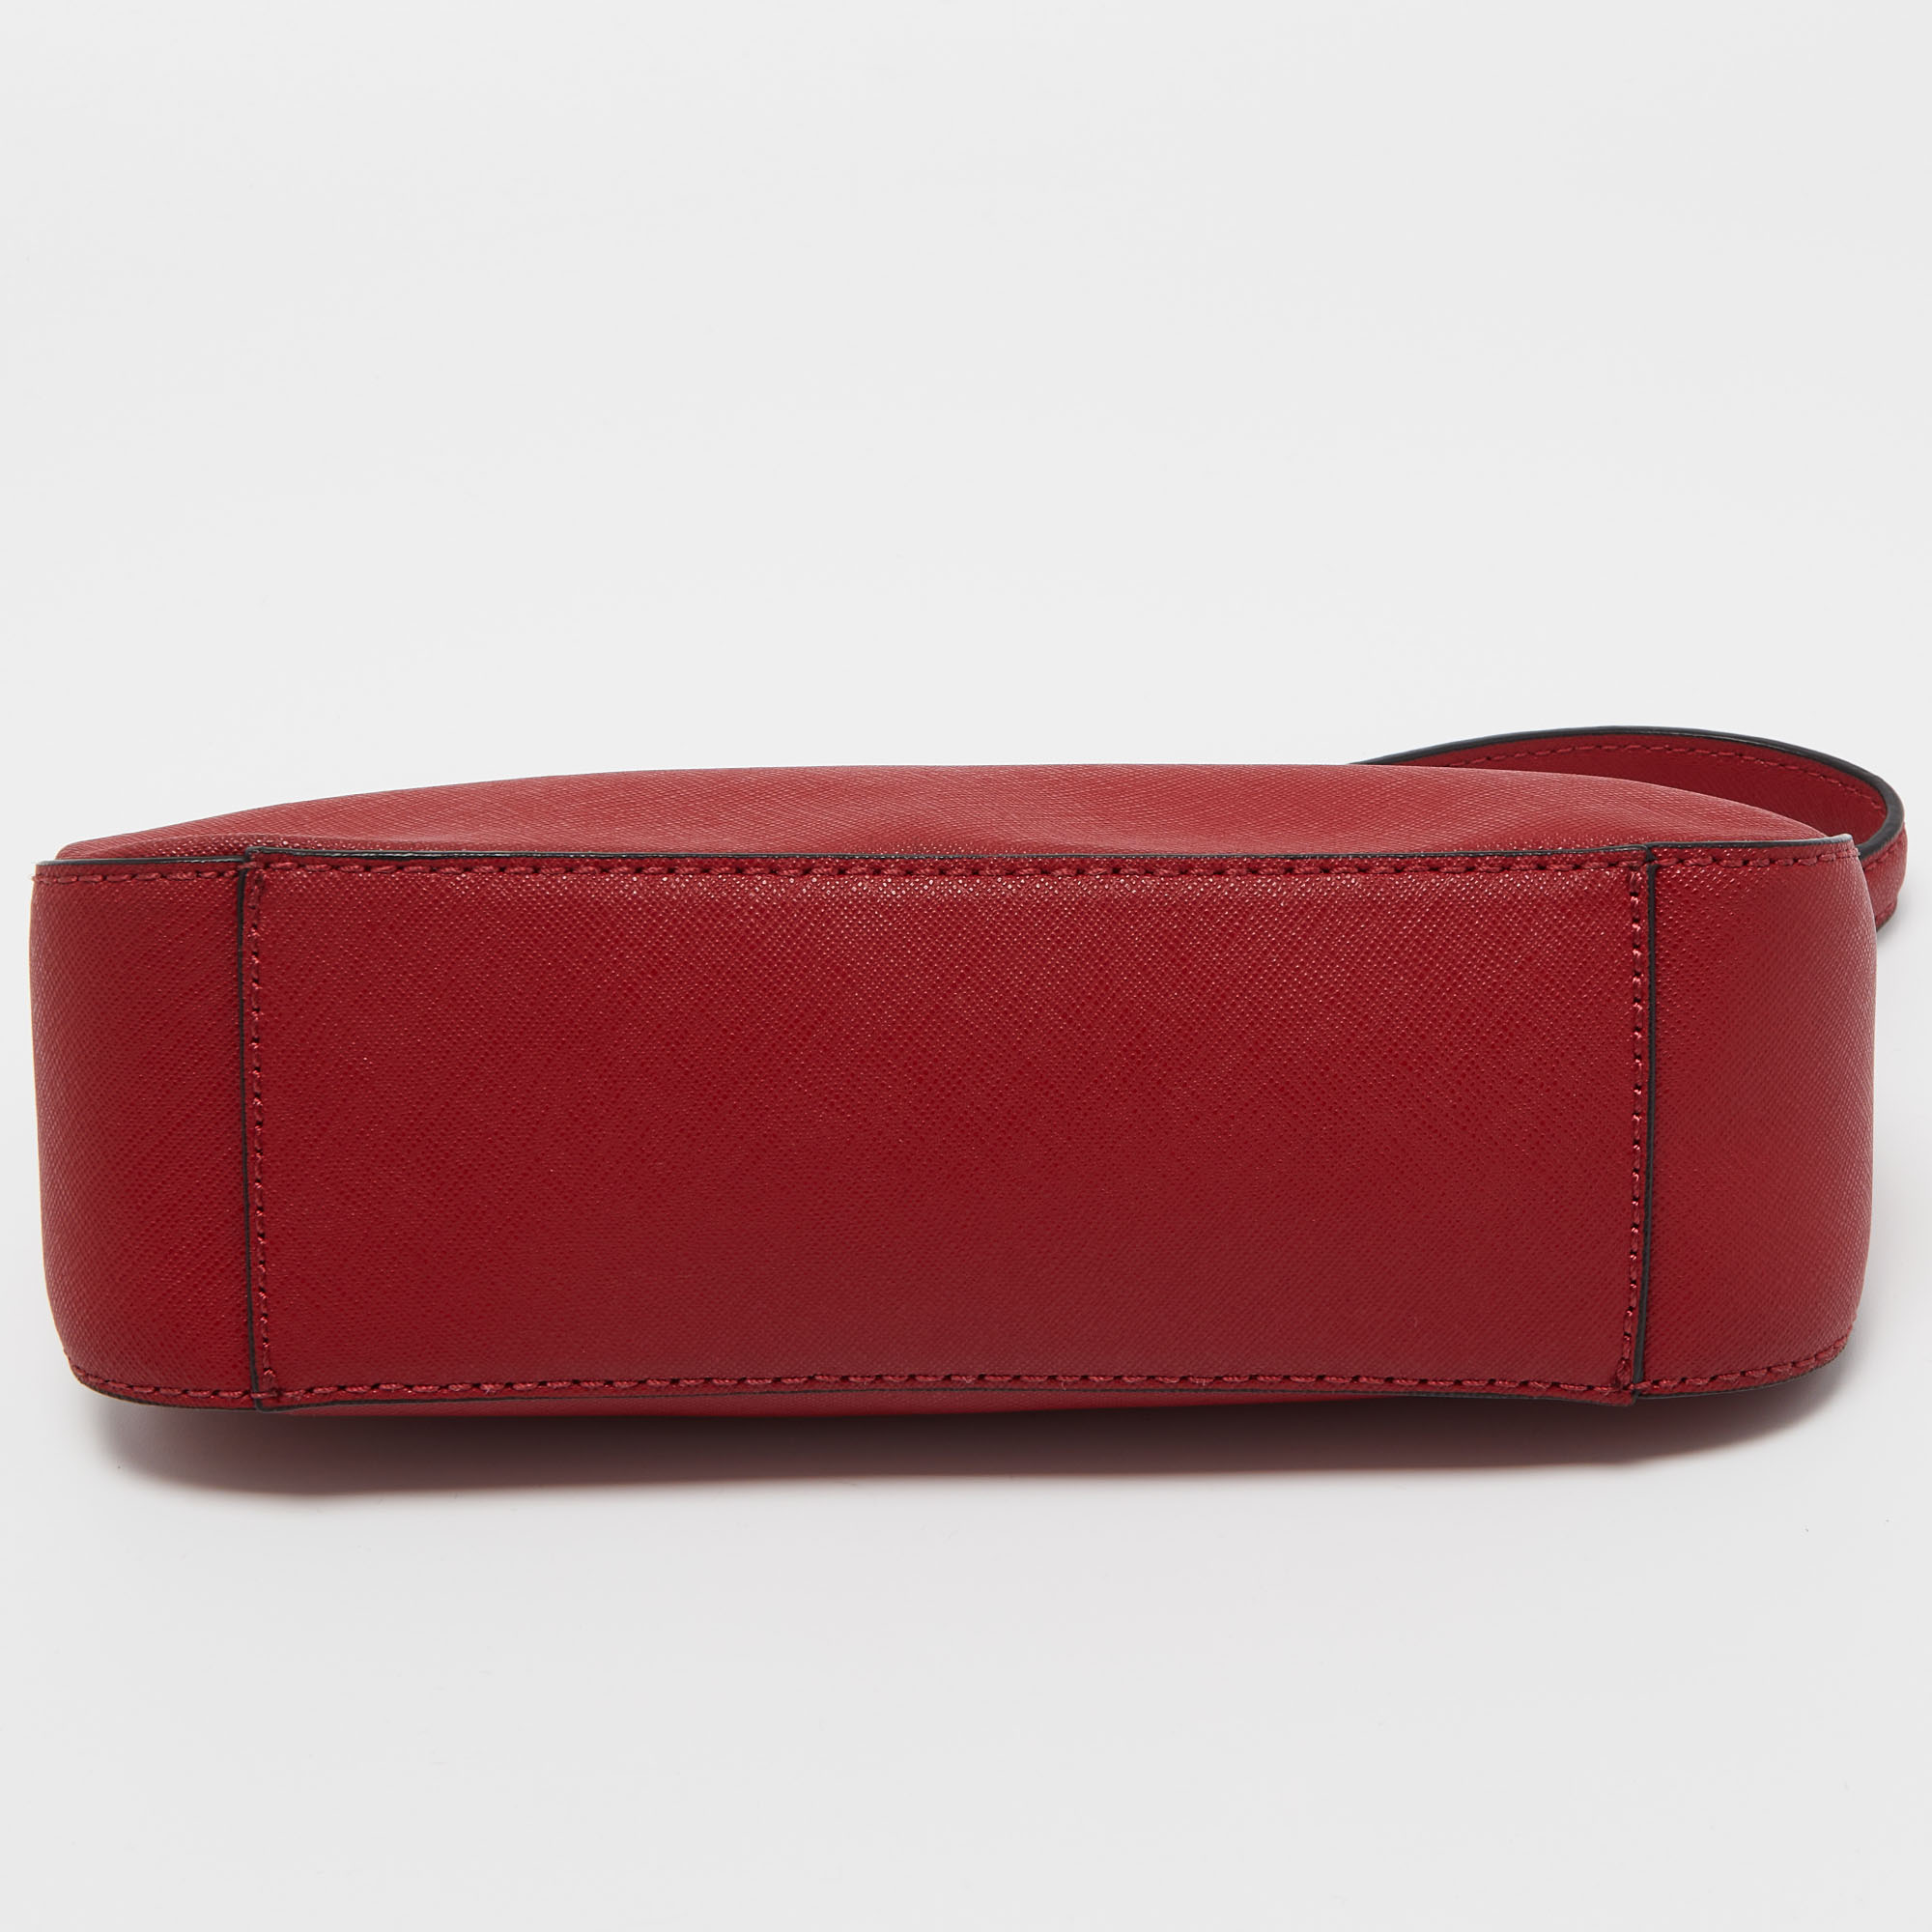 DKNY Red Leather Carol Baguette Bag